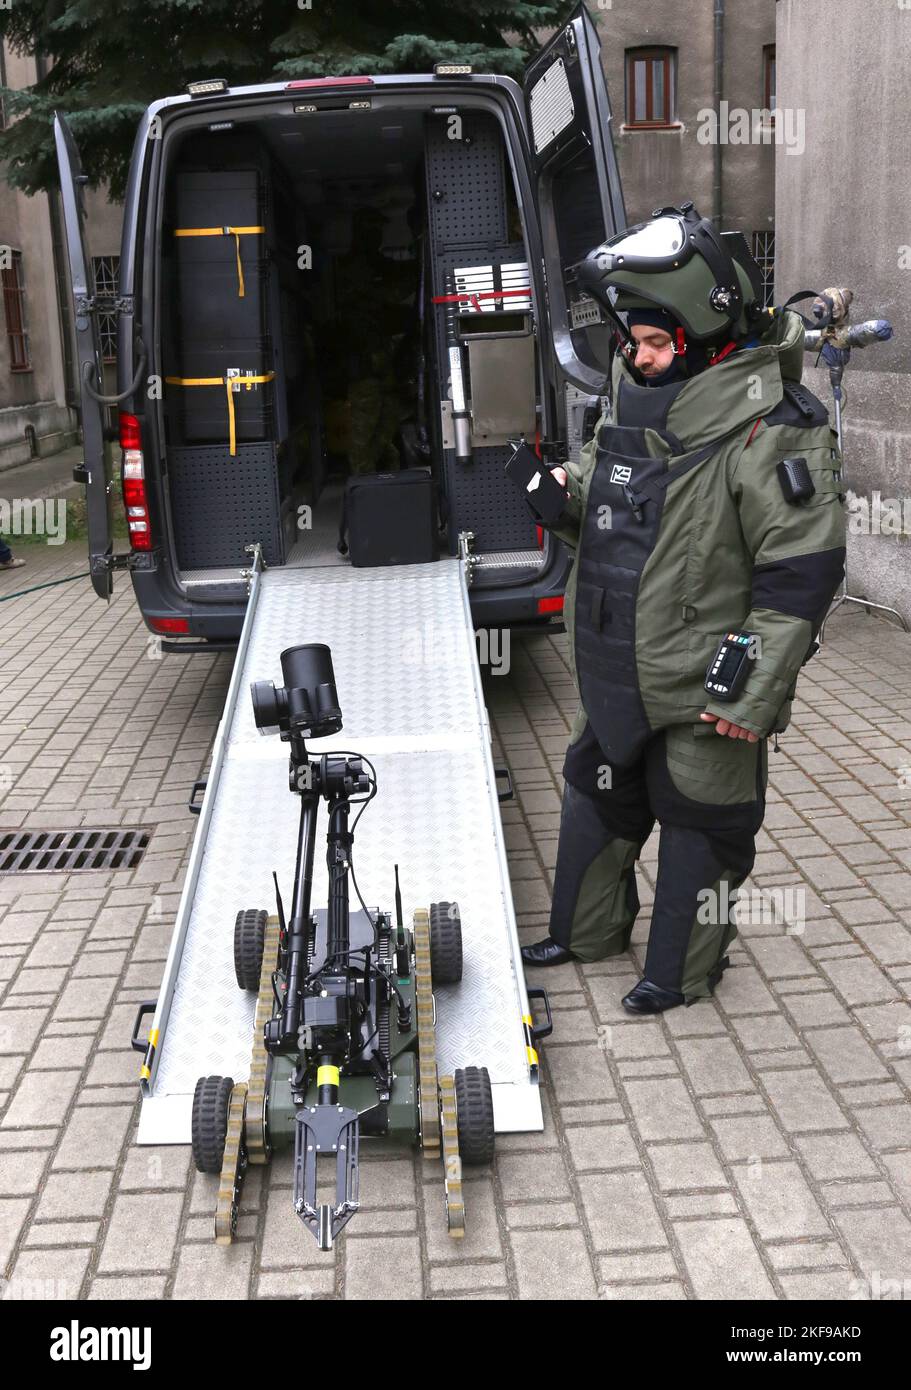 Crcaow. Krakau. Polen. Ferngesteuer Bombenentsorgungsroboter, der von der Polizei und dem Offizier mit schwerem Sprenganzug verwendet wird. Stockfoto